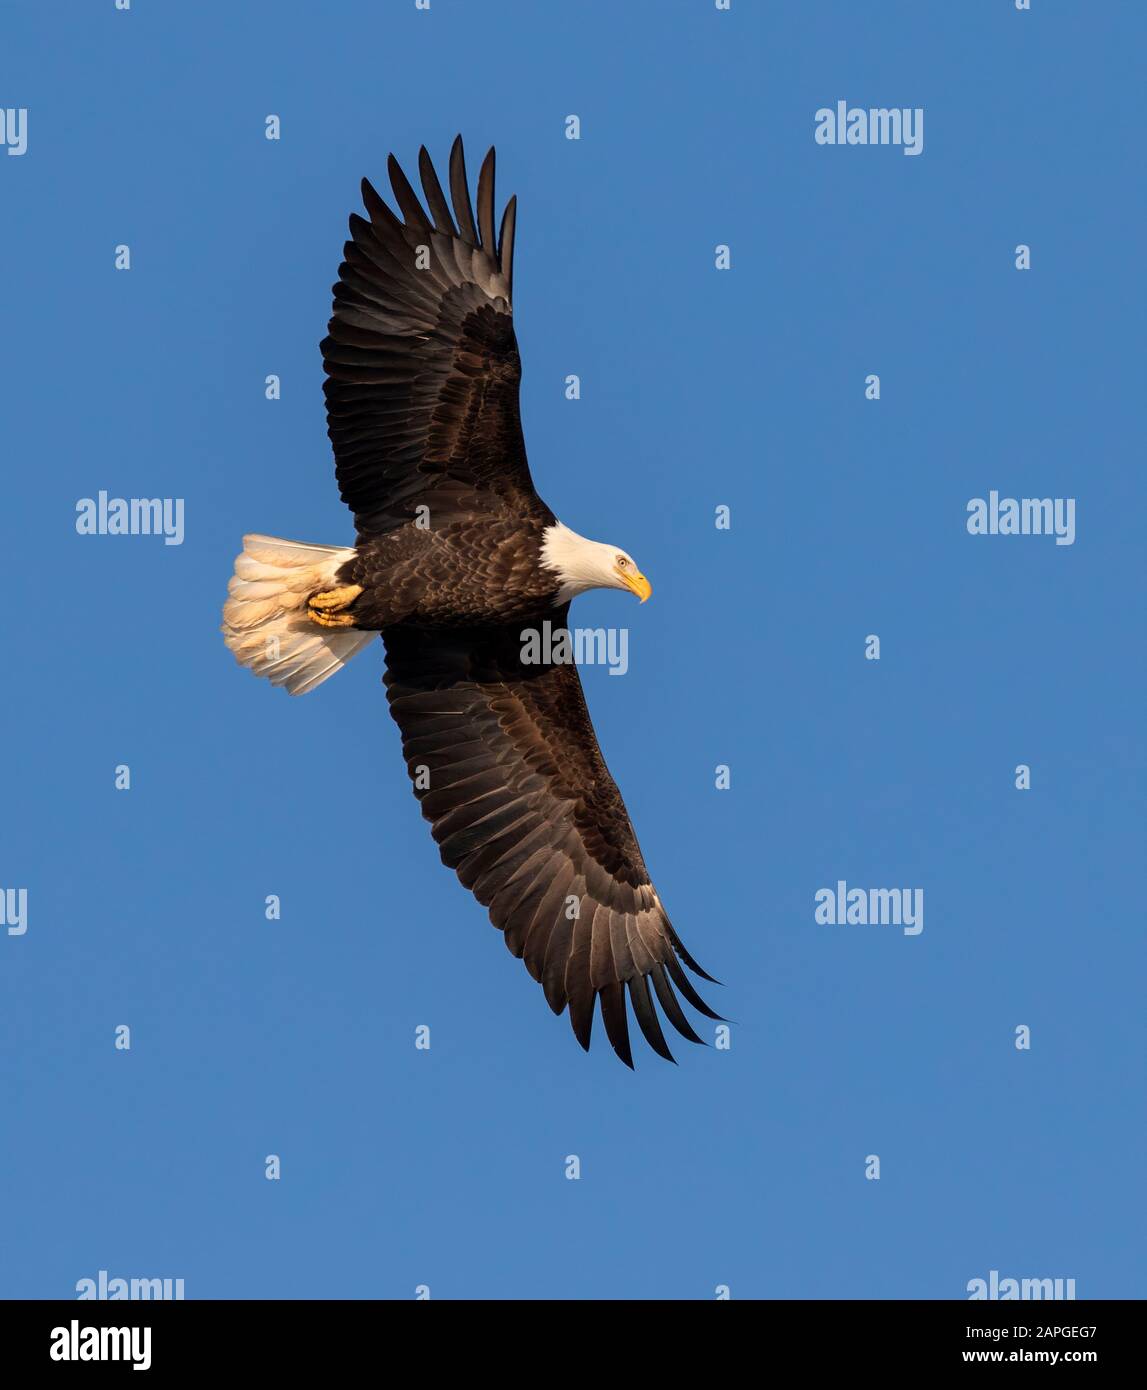 Bald eagle (Haliaetus leucocephalus) adulte en ascension dans le ciel bleu, Saylorville, Iowa, États-Unis Banque D'Images